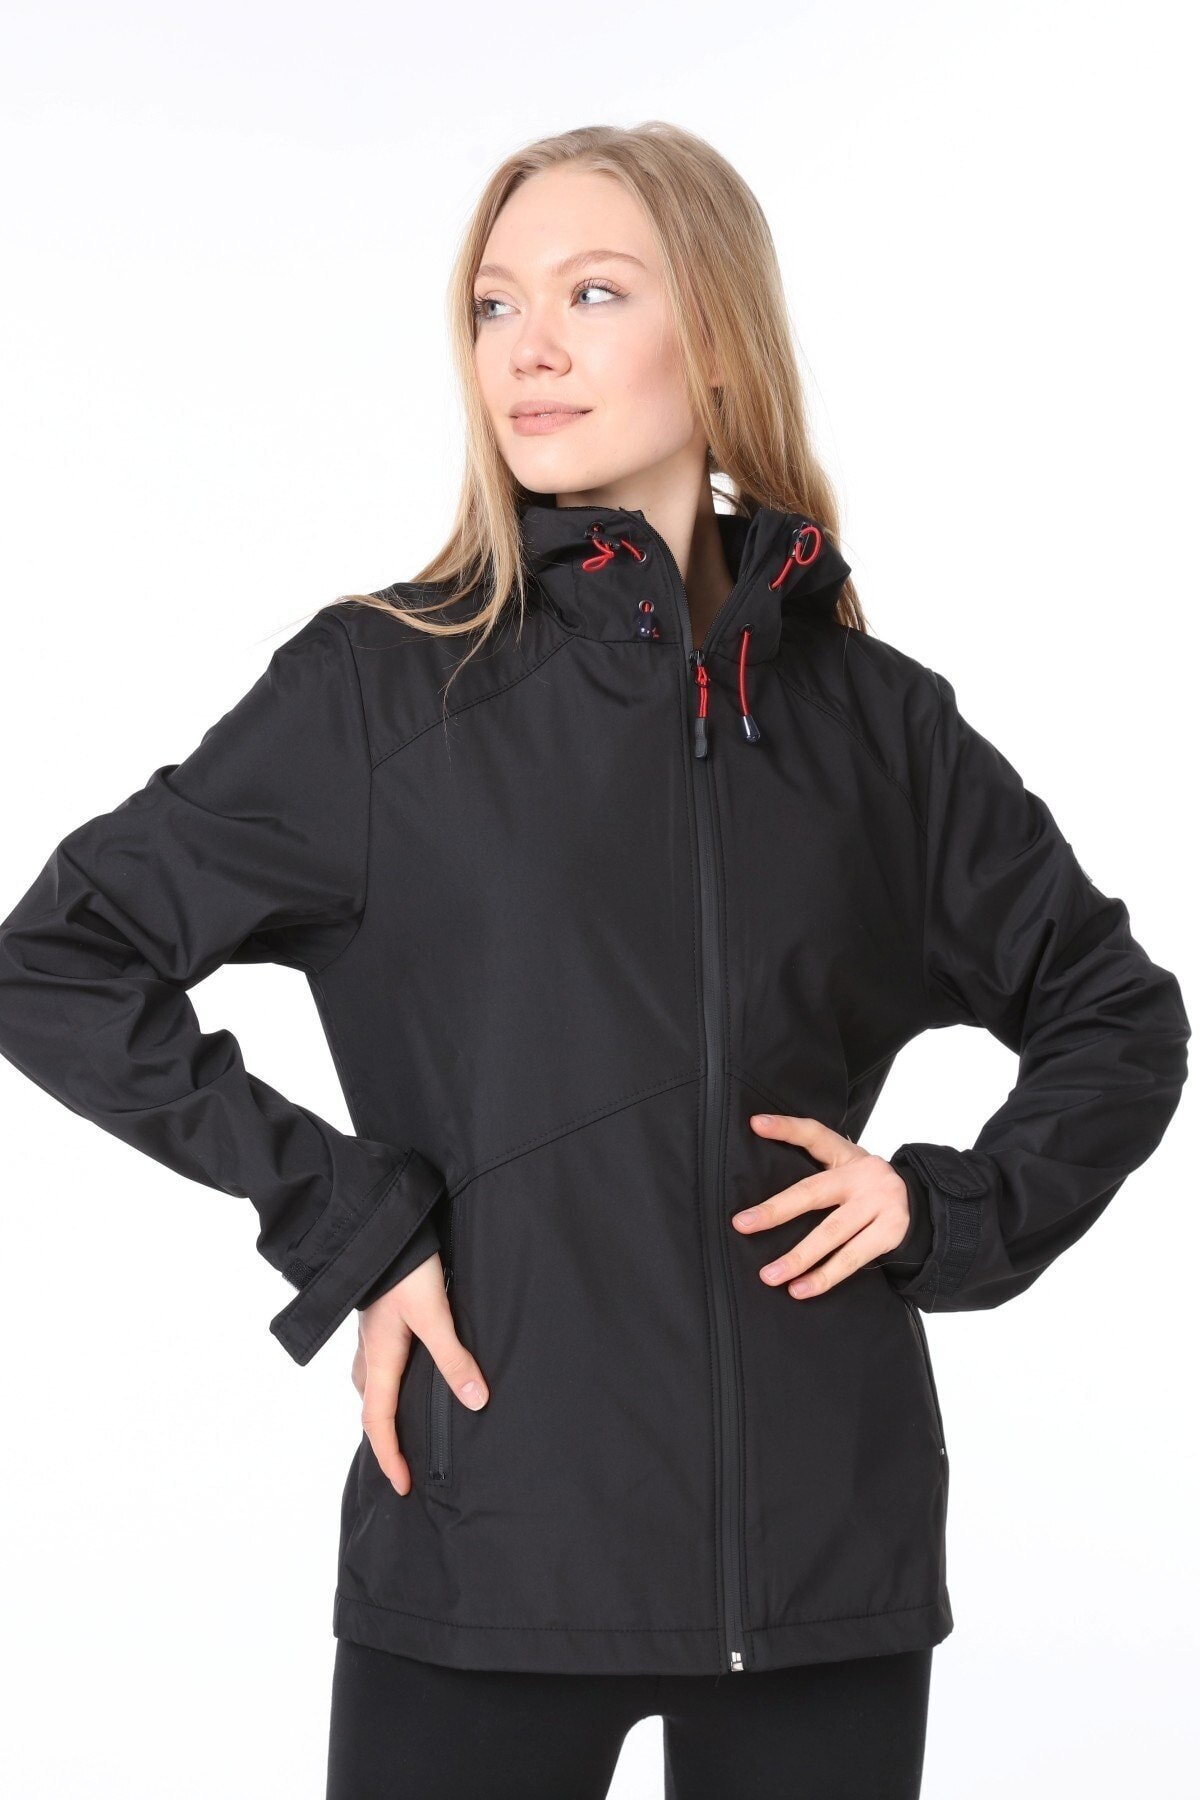 Ghassy Co.Kadın Rüzgarlık/Yağmurluk Omuz Detaylı Mevsimlik Taş Spor Ceket